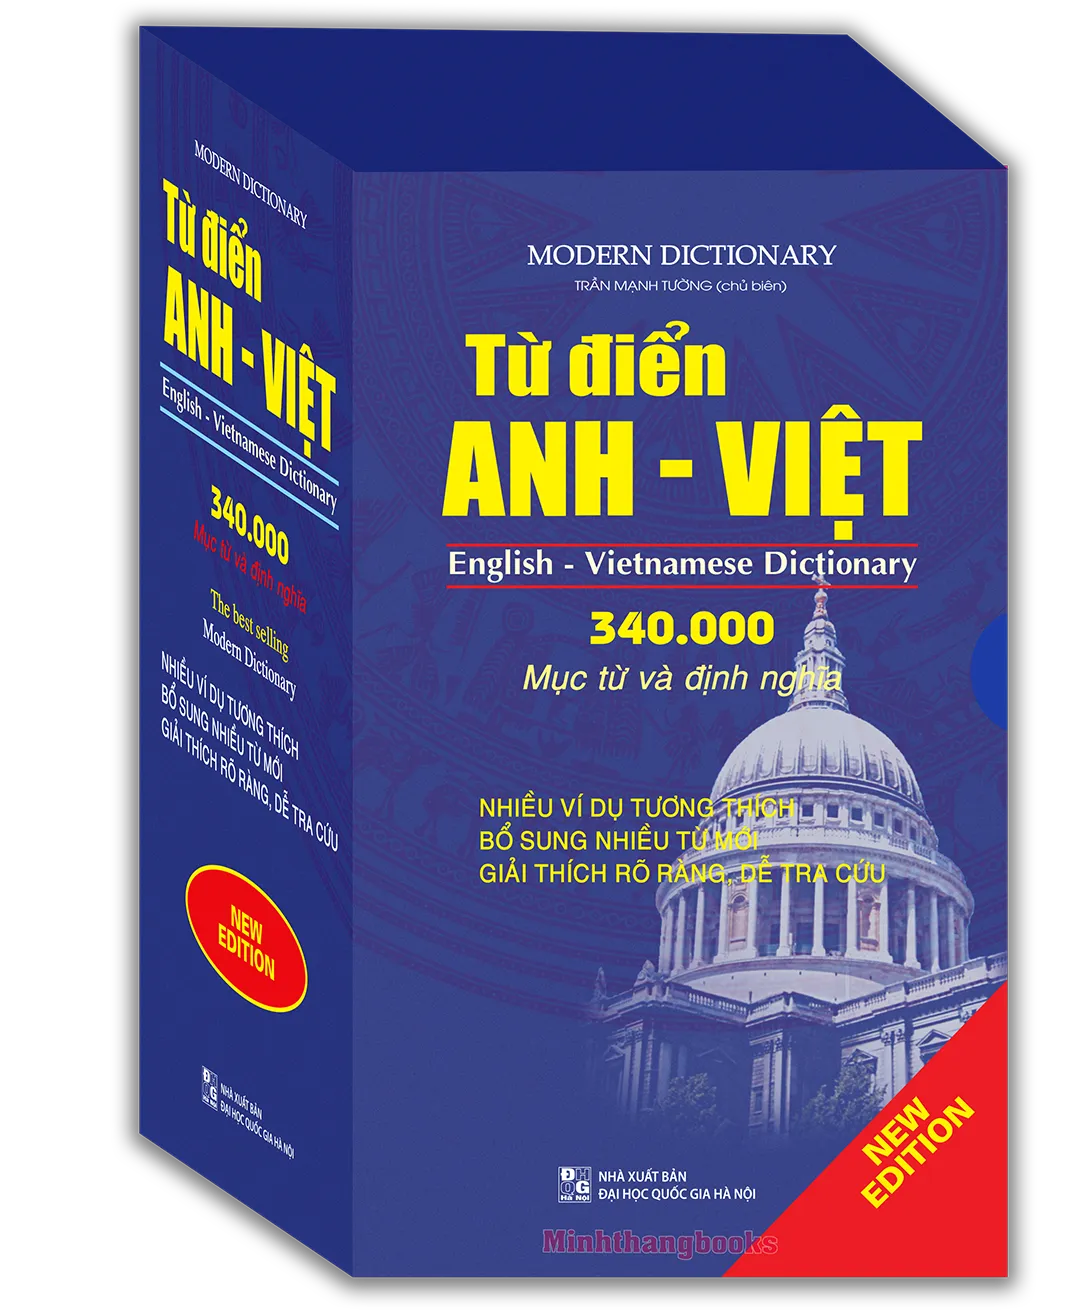 Từ Điển Anh - Việt 340.000 Mục Từ Và Định Nghĩa (Bìa Mềm)